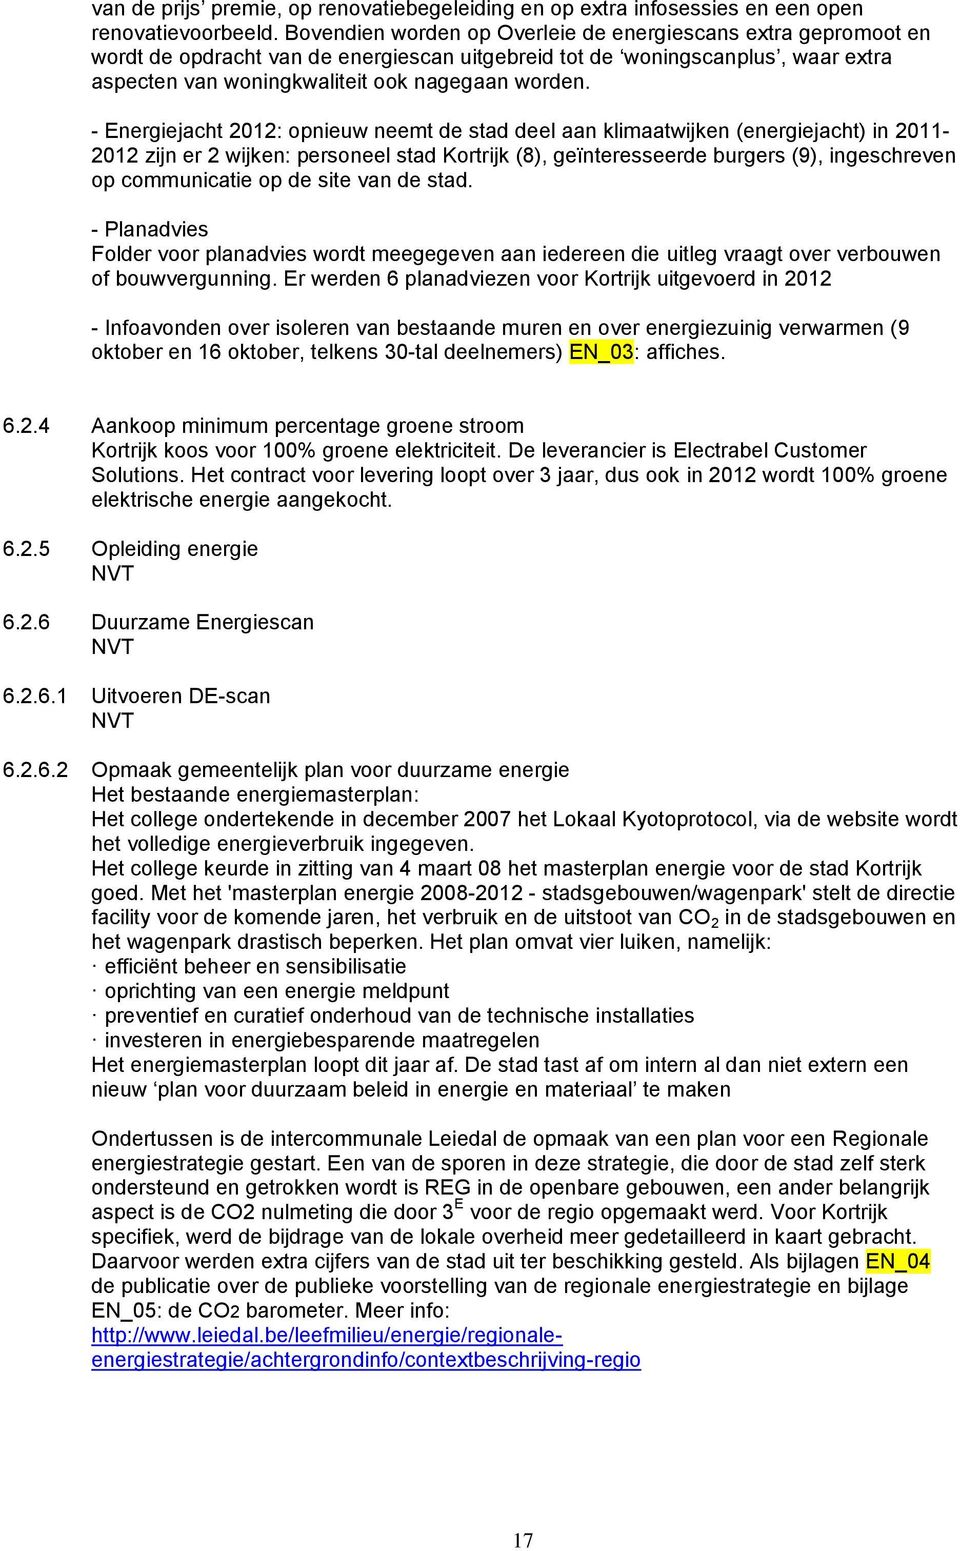 - Energiejacht 2012: opnieuw neemt de stad deel aan klimaatwijken (energiejacht) in 2011-2012 zijn er 2 wijken: personeel stad Kortrijk (8), geïnteresseerde burgers (9), ingeschreven op communicatie